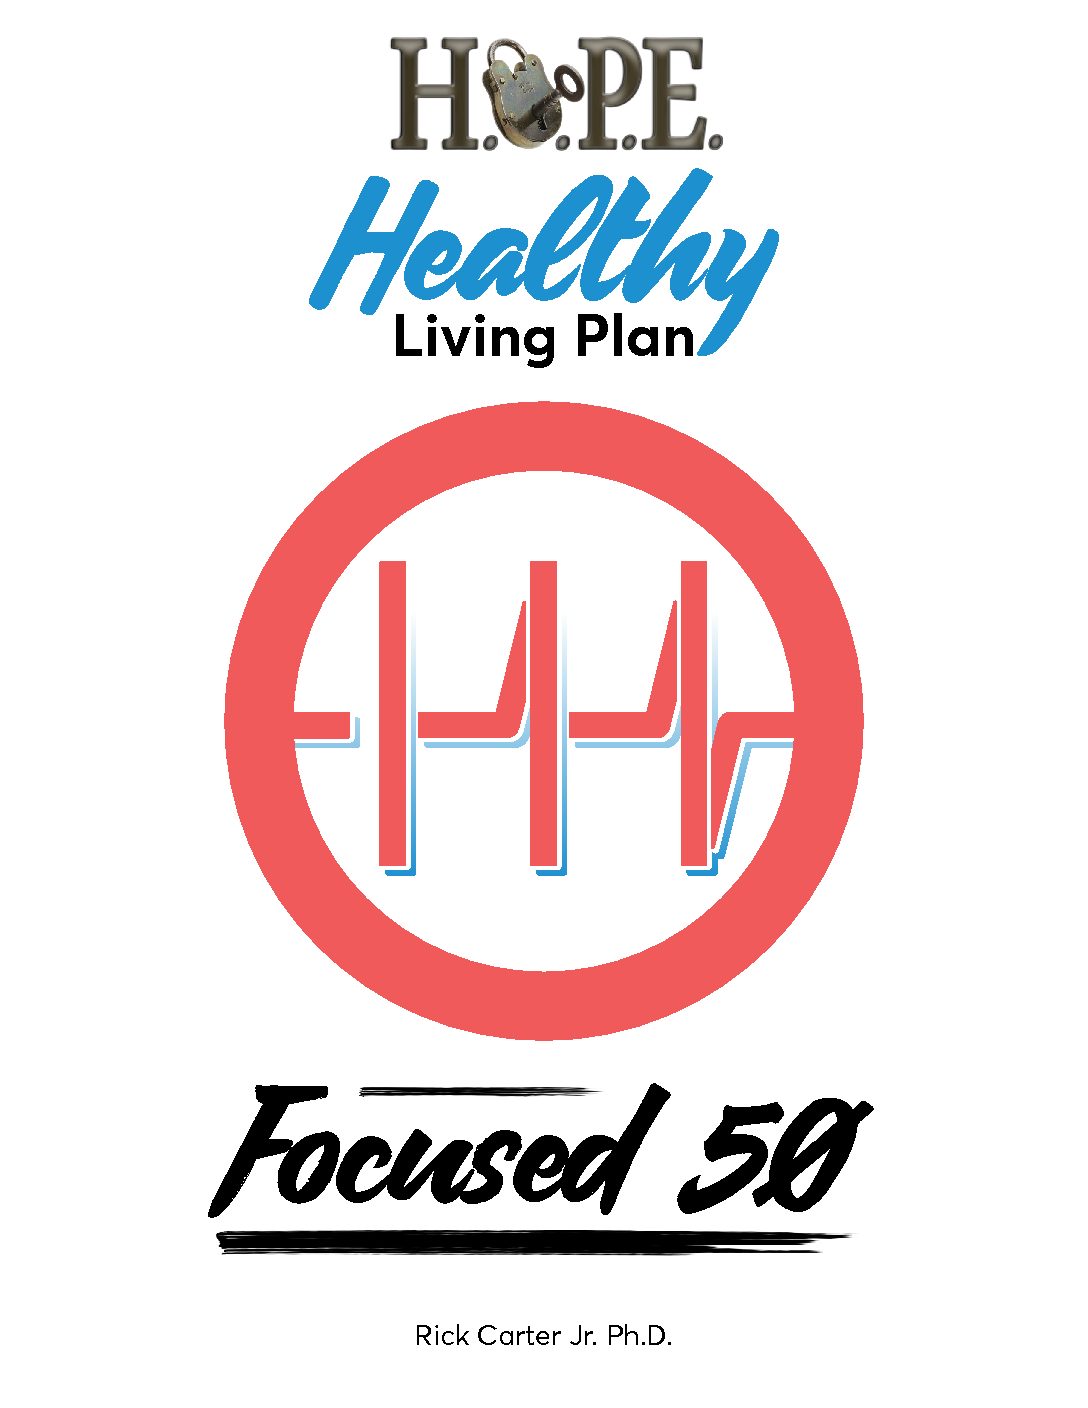 HOPE Healthy Living Plan Focused 50